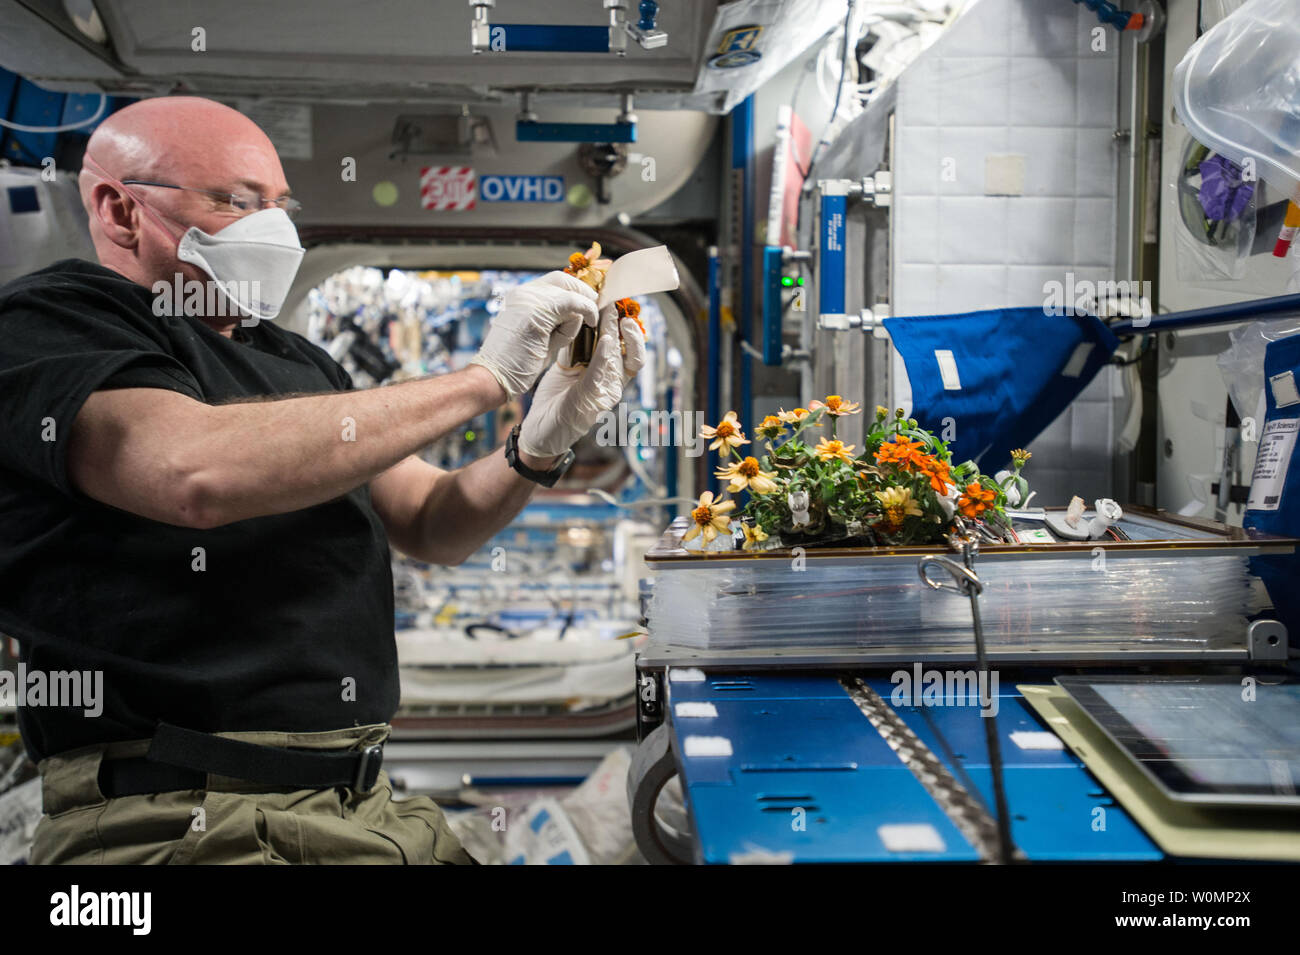 L'astronauta della NASA Scott Kelly raccolte lo spazio-zinnias cresciuto per il giorno di San Valentino il 14 febbraio 2016. I fiori sono stati cresciuti sulla Stazione Spaziale Internazionale come parte delle verdure inchiesta che potrebbe portare alla coltivazione di colture commestibili per i membri dell'equipaggio a lunga durata missioni spaziali. ..Parte della NASA umano Programma di ricerca, la missione di un anno sulla Stazione spaziale internazionale è uno sforzo congiunto tra Stati Uniti agenzia spaziale, l'agenzia Spaziale Federale Russa Roscosmos () e i loro partner internazionali. La missione è parte di un progetto di ricerca scientifica lo studio a lungo termine e del volo spaziale Foto Stock